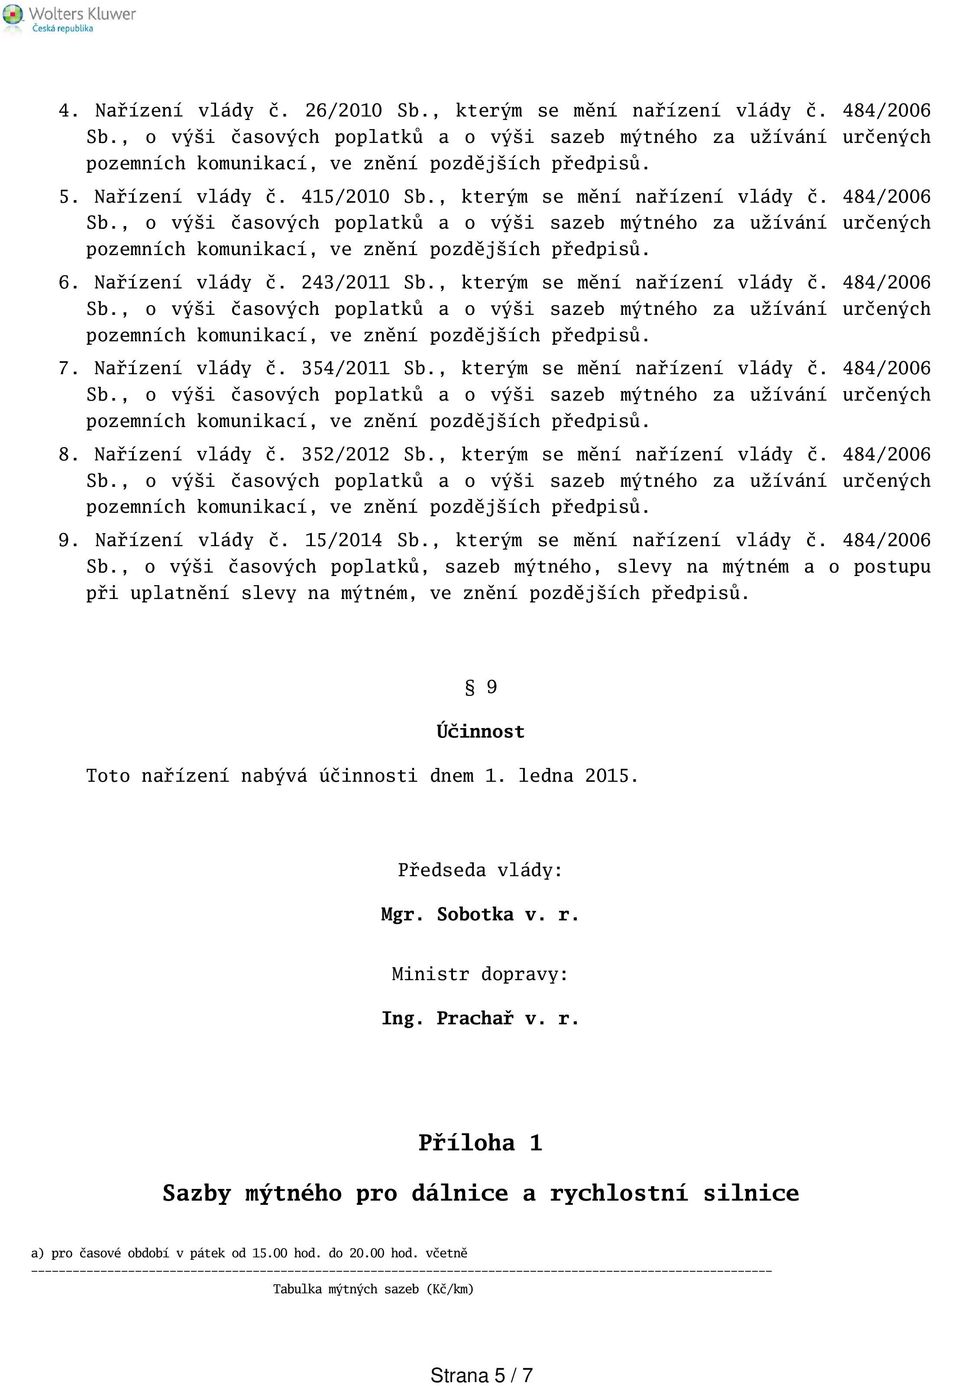 Nařízení vlády č. 15/2014 Sb., kterým se mění nařízení vlády č. 484/2006 Sb.